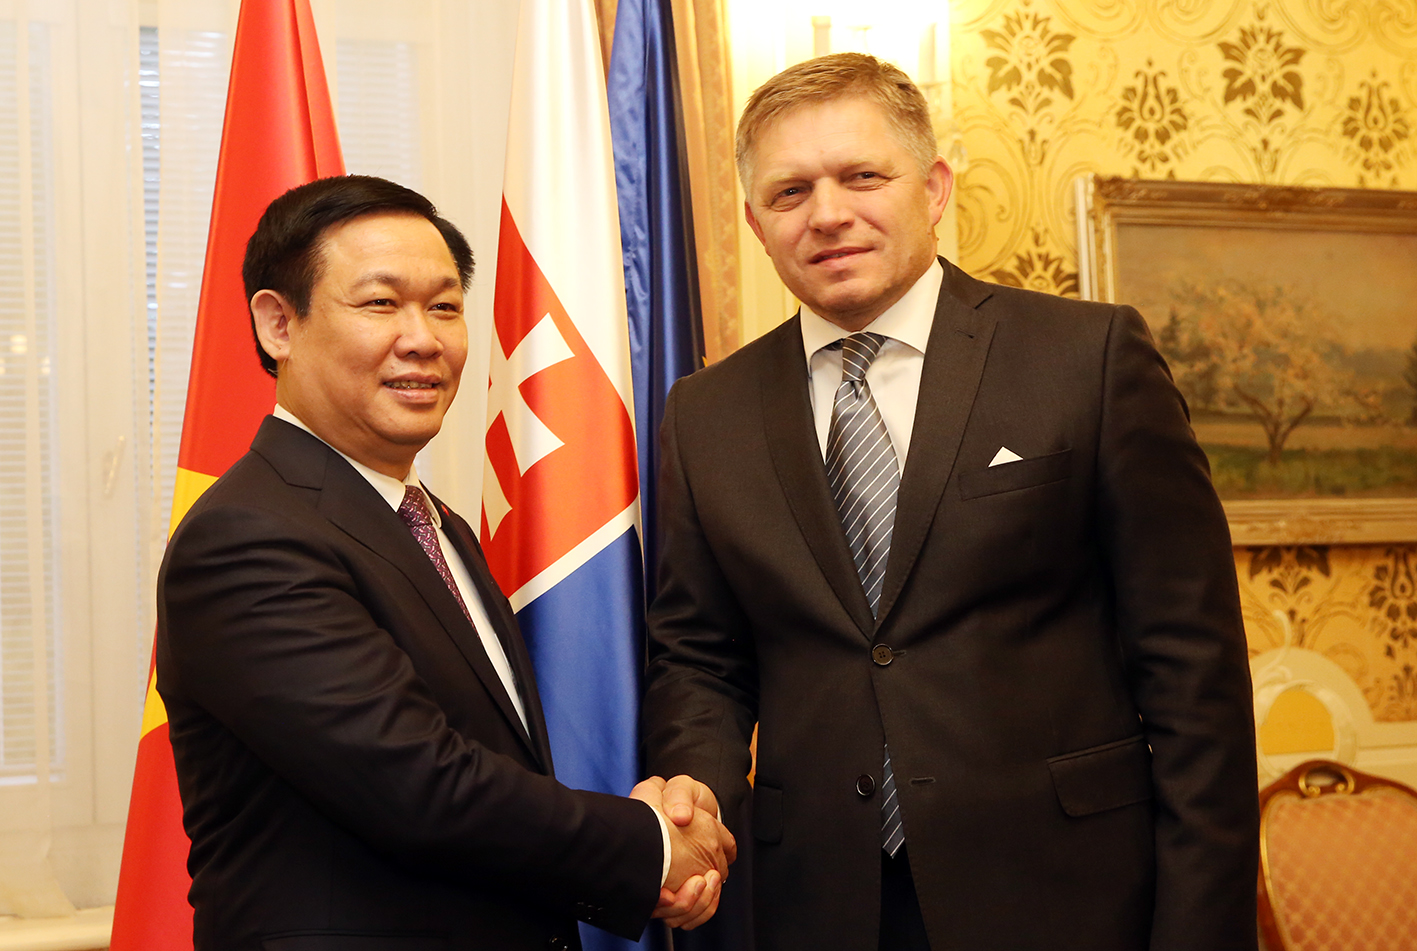 Chuyến thăm tới trường cũ ở Slovakia của Phó Thủ tướng Vương Đình Huệ mang lại nhiều cảm hứng và ý nghĩa đặc biệt. Đó là dấu mốc quan trọng trong sự nghiệp học tập của ông cũng như mối quan hệ giữa Việt Nam và Slovakia.